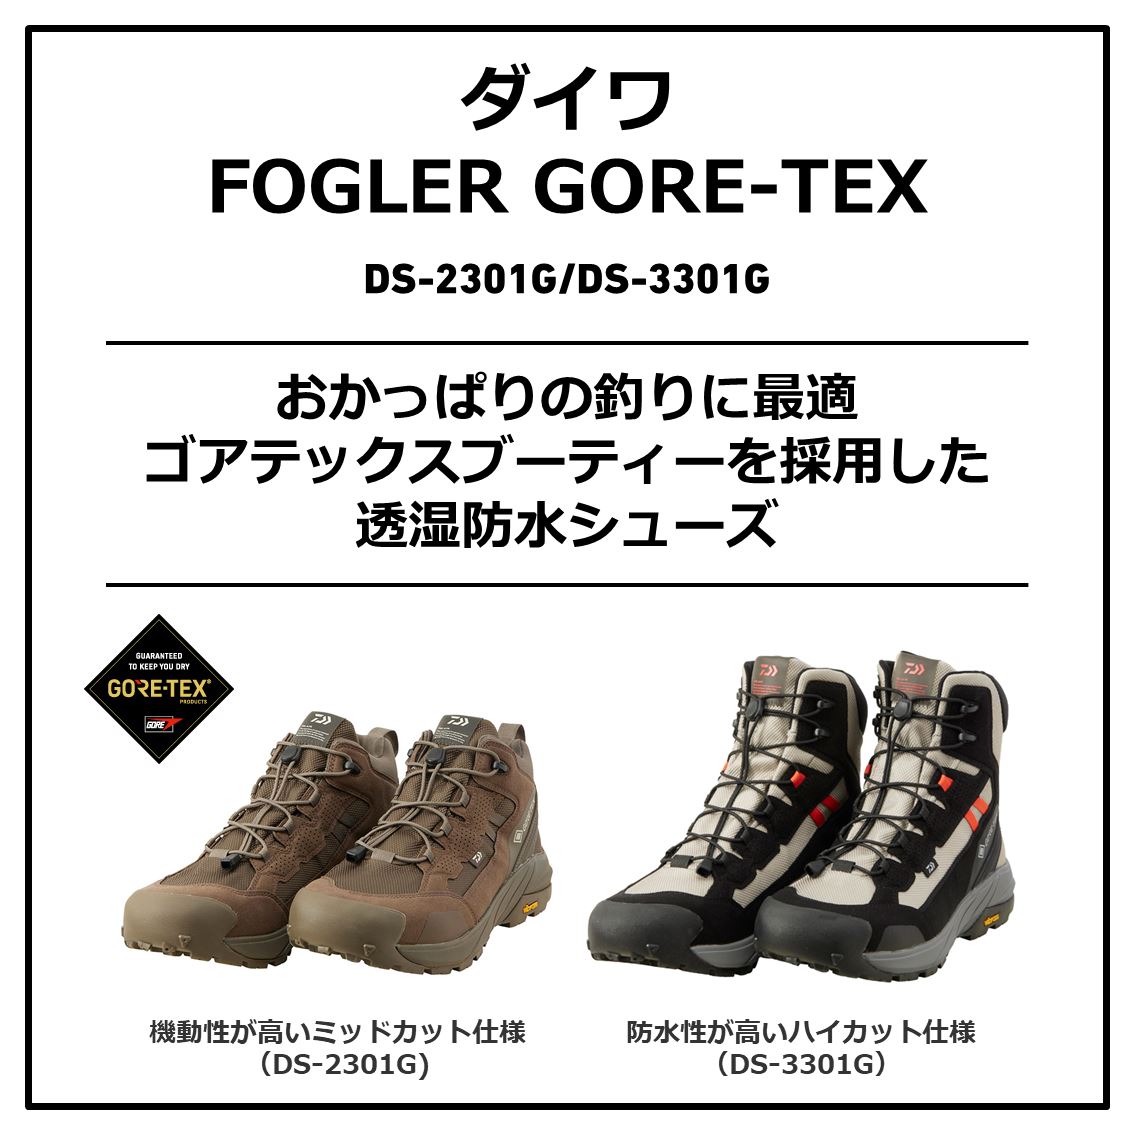 ダイワ(Daiwa) DS-2301G ダイワ FOGLER GORE-TEX ミッドカット 26.5